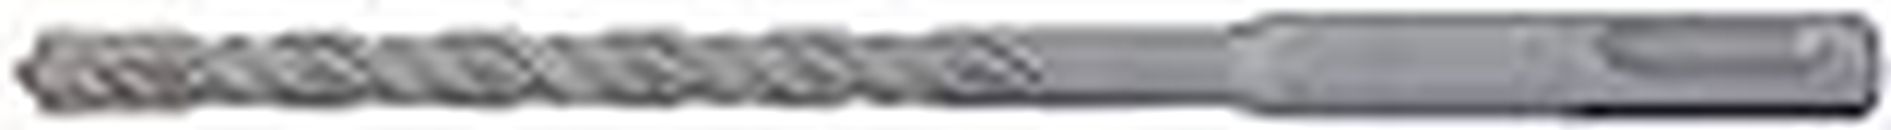 Taparia HDC 8160 Steel (8 x 160mm) Cross Tip Plus Hammer Drill Bit (Silver)